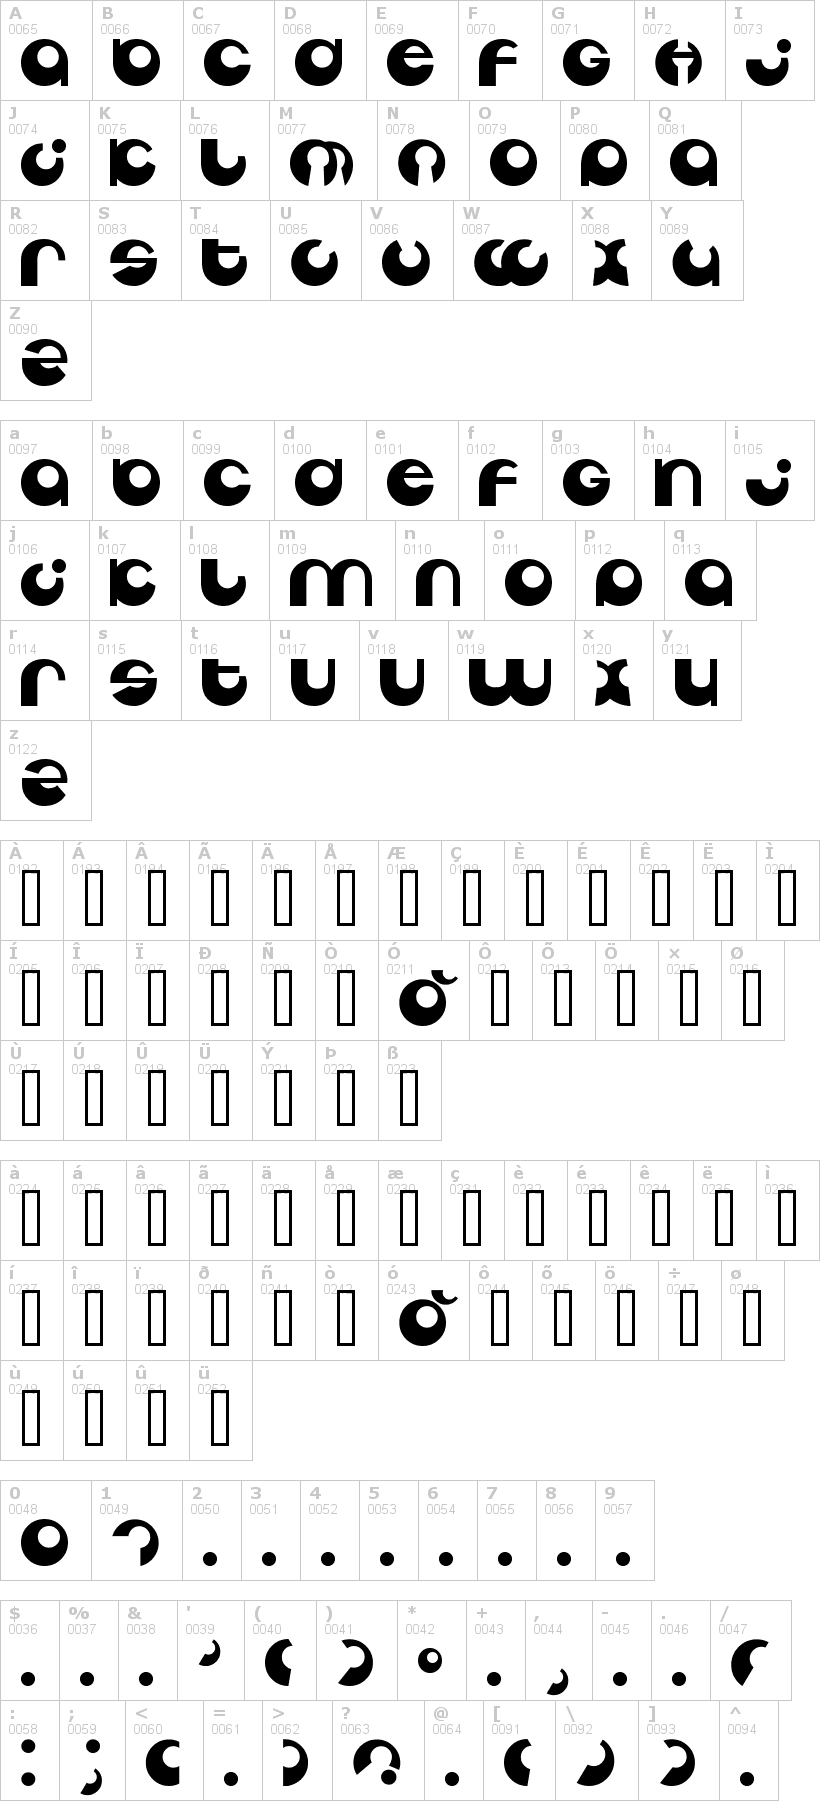 Lettere dell'alfabeto del font tabun con le quali è possibile realizzare adesivi prespaziati